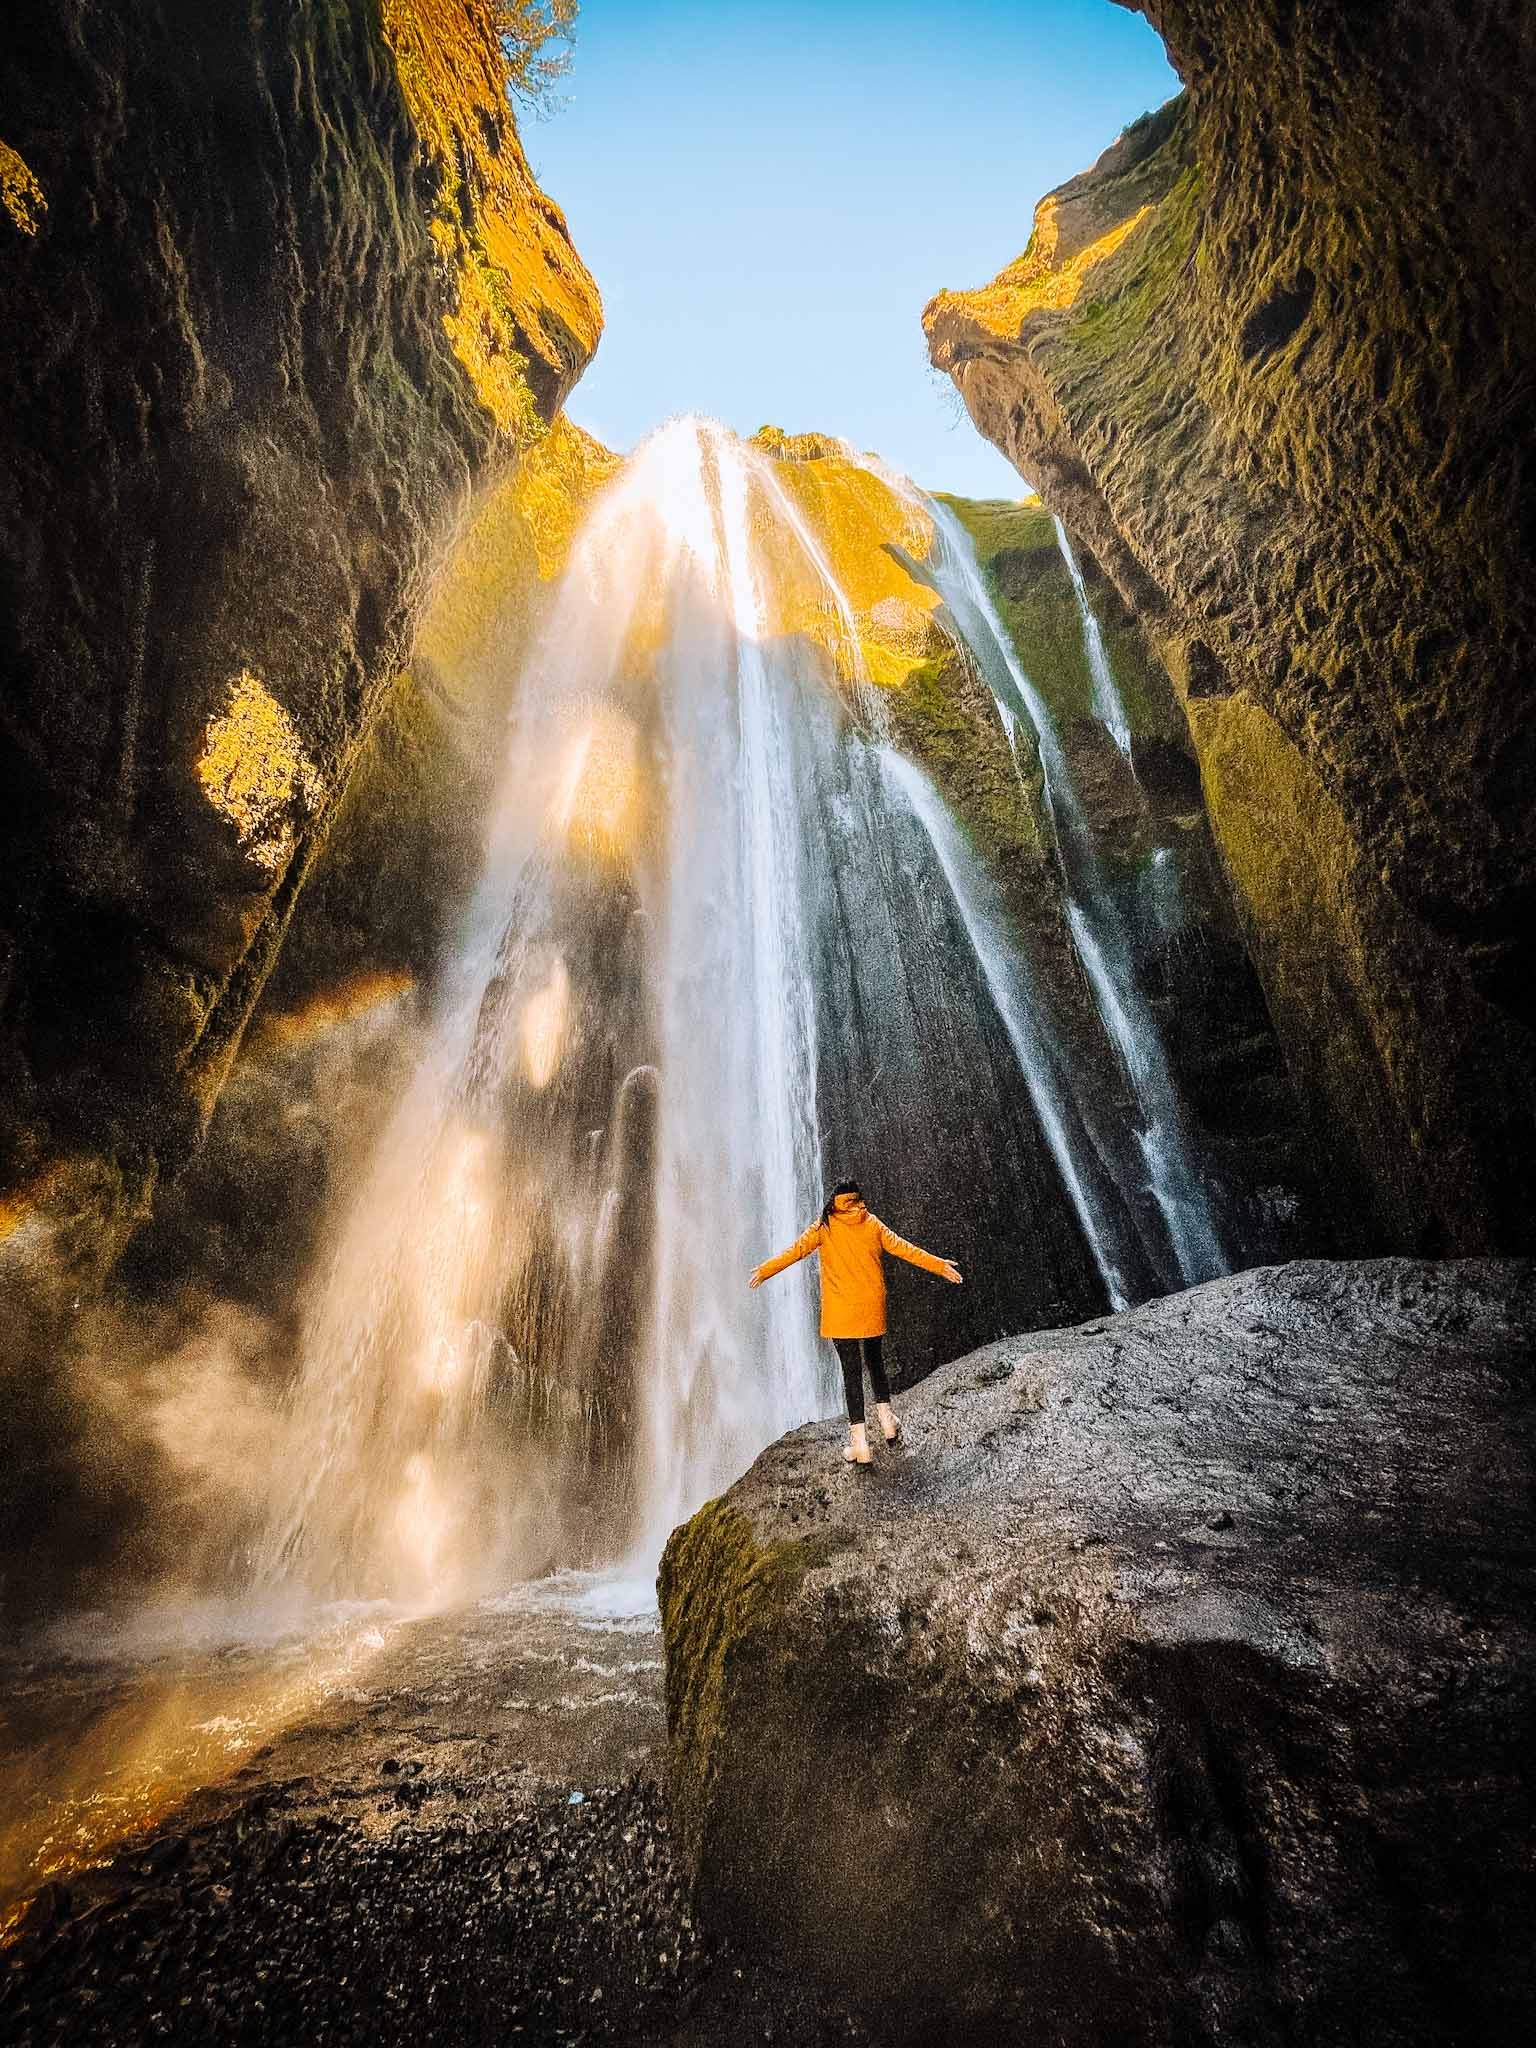 Iceland Instagram spots - Best waterfalls in Iceland - Gljufrafoss